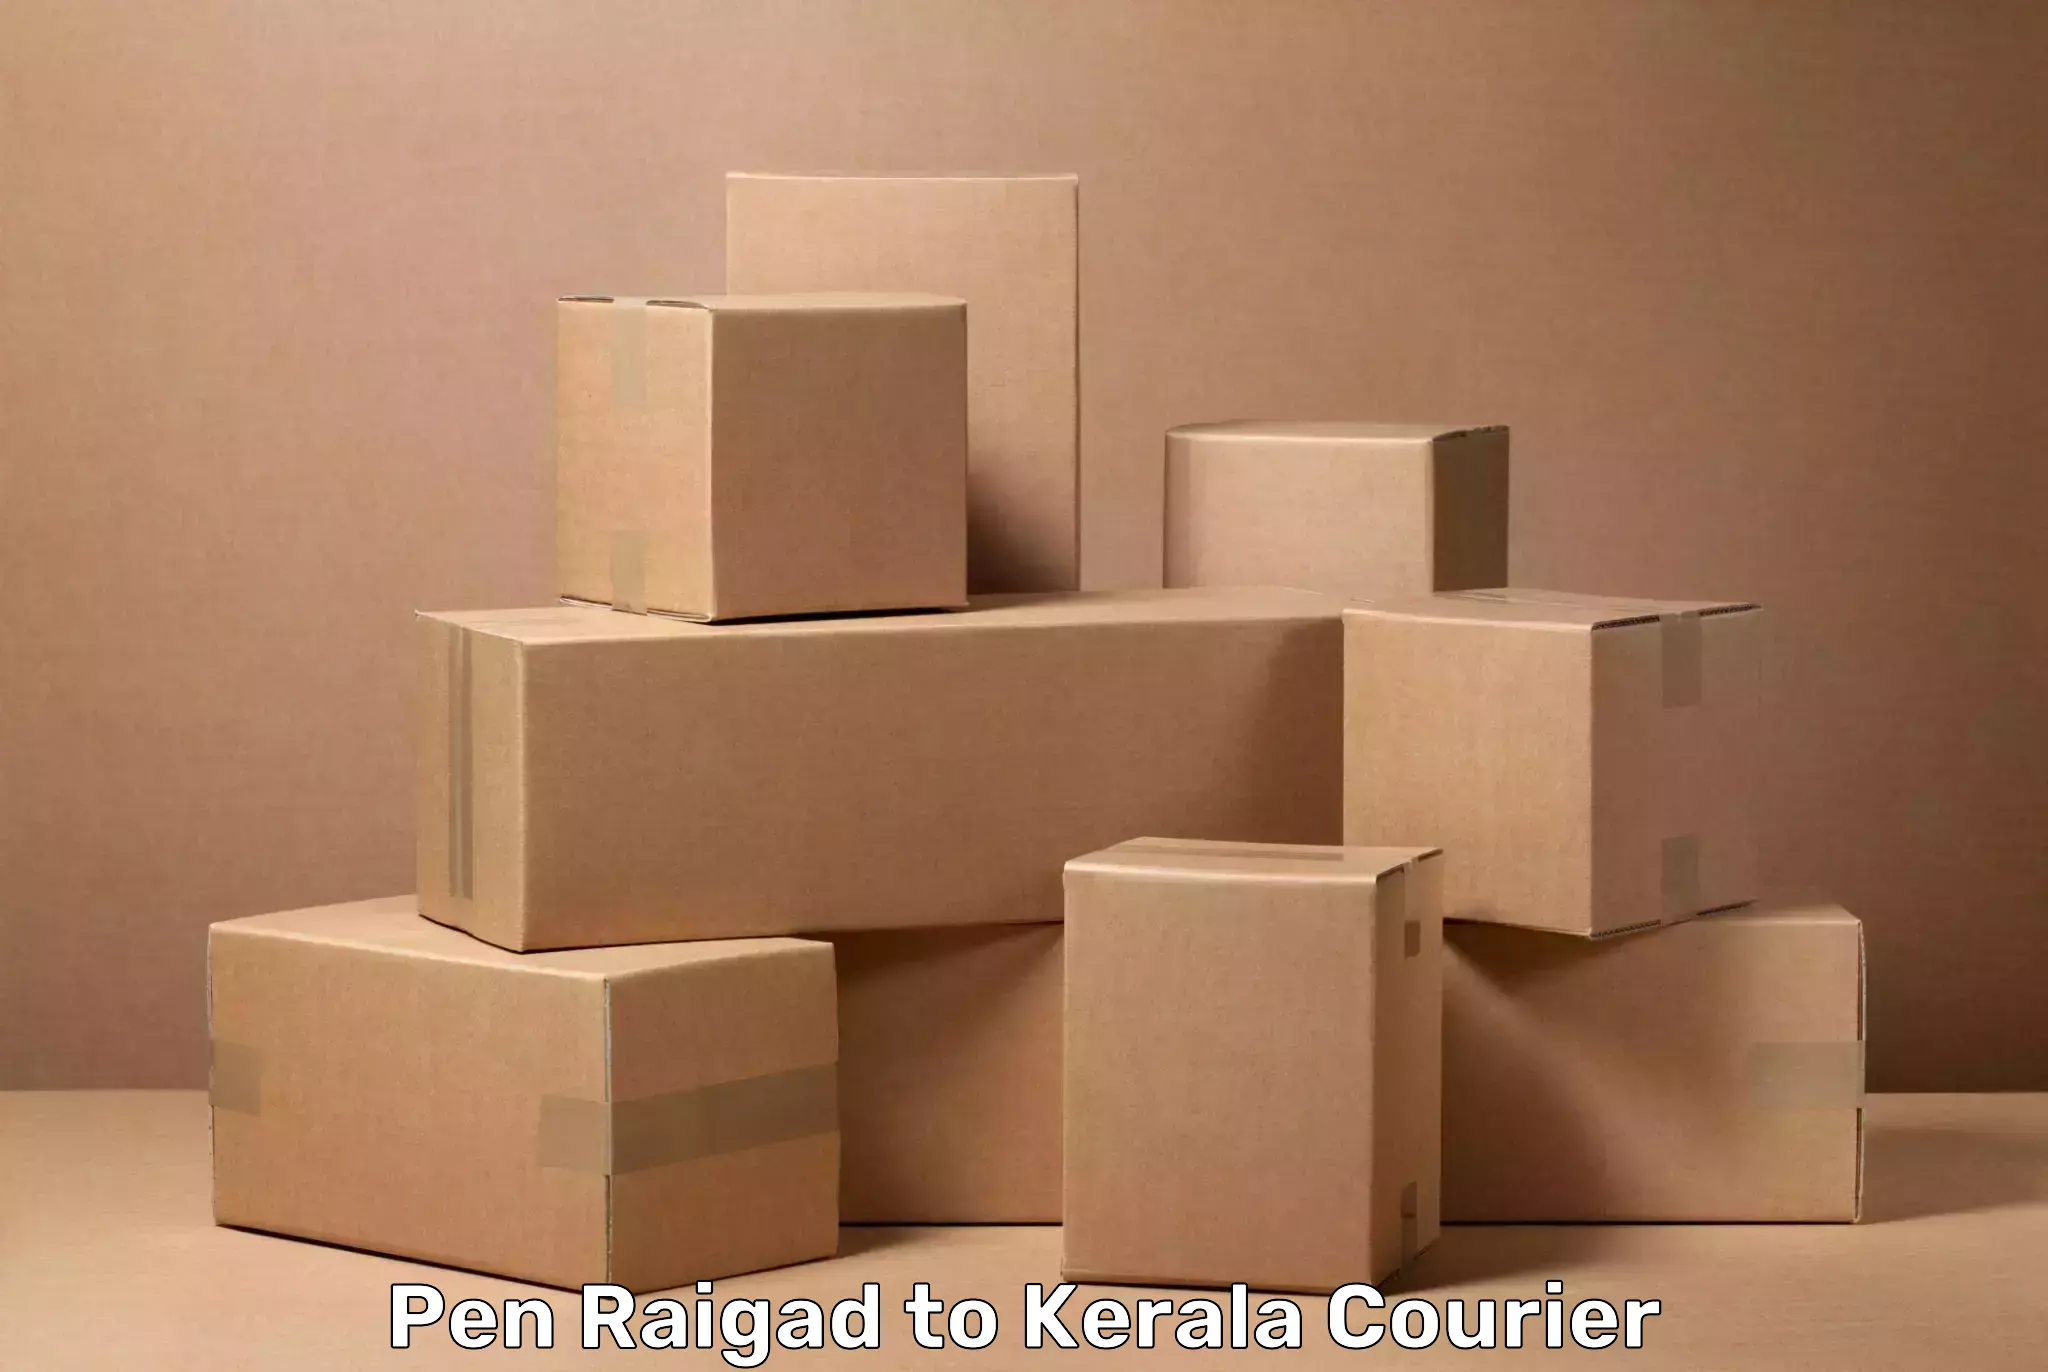 Baggage transport estimate in Pen Raigad to Cochin Port Kochi